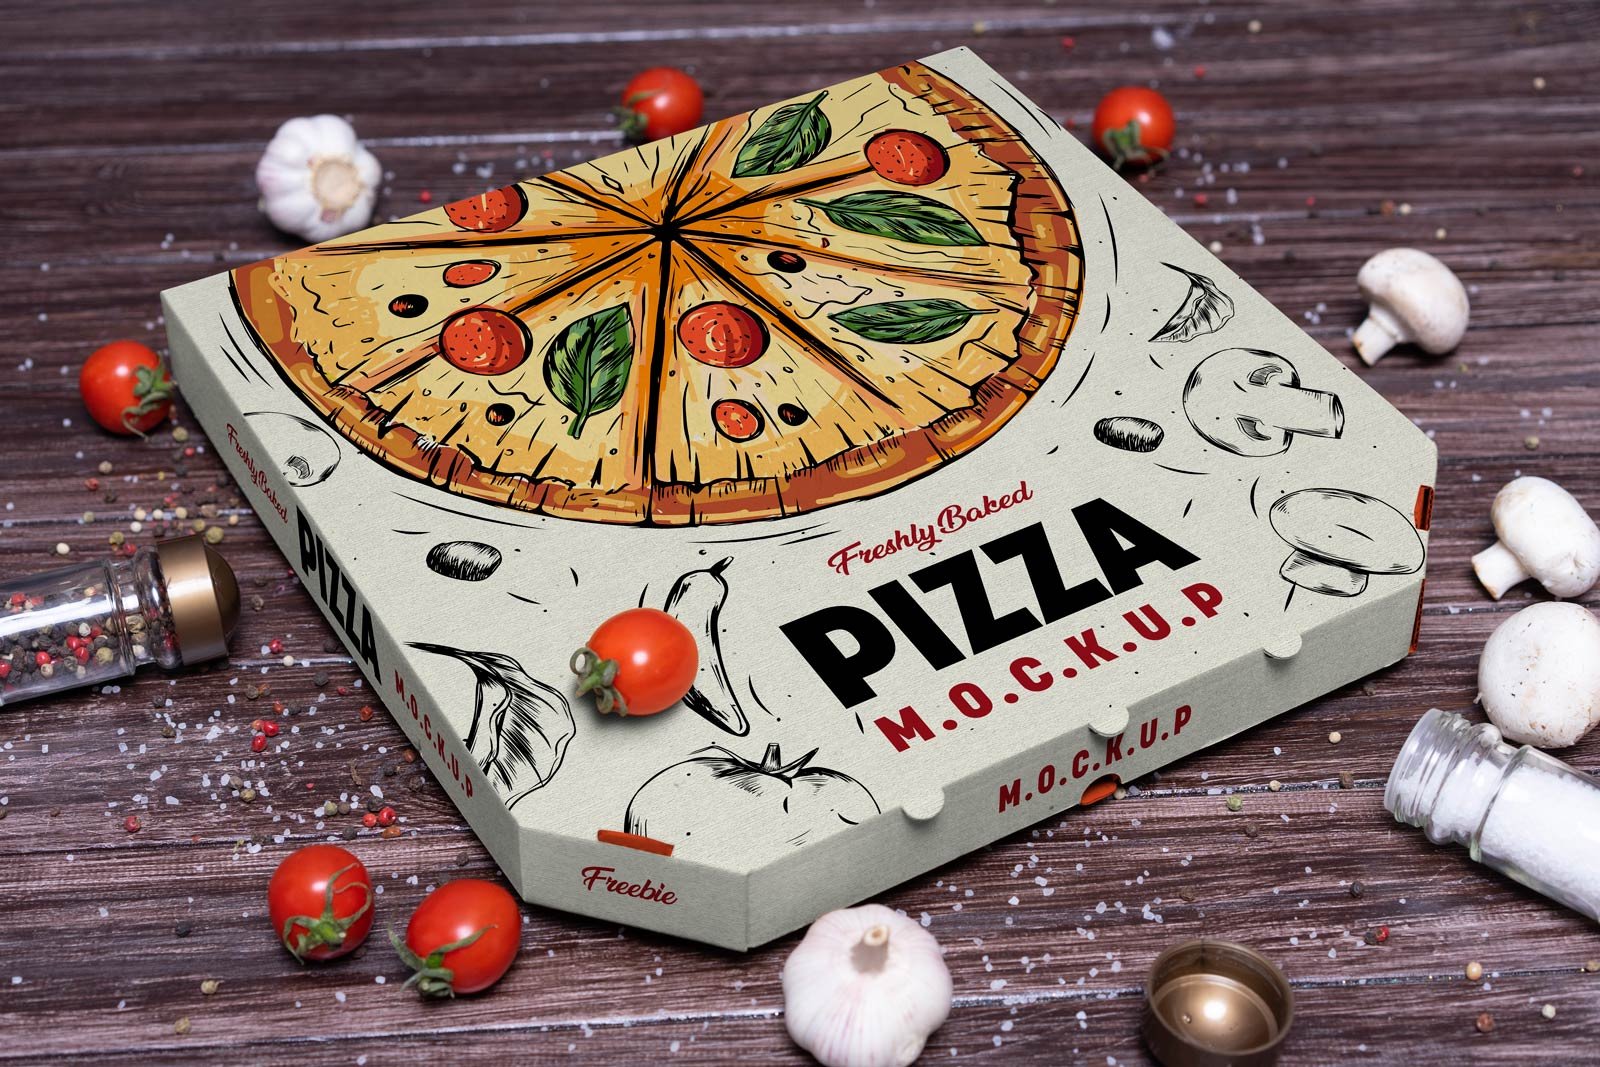 Макет коробки для пиццы в перспективе зрелище